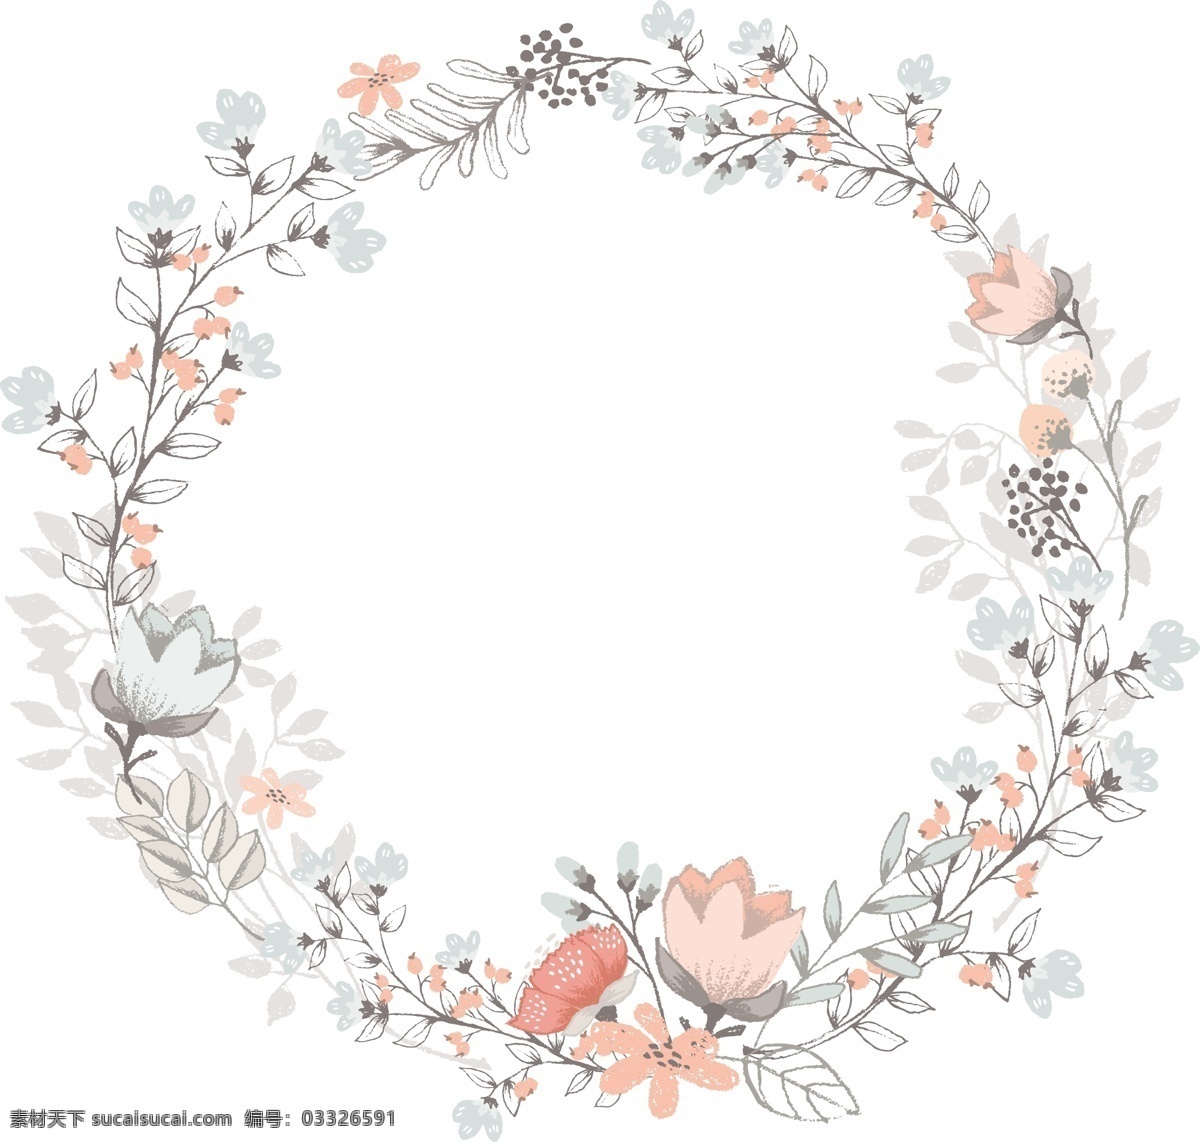 多彩 欧美 复古 花卉 花边 边框 元素 矢量 矢量素材 设计素材